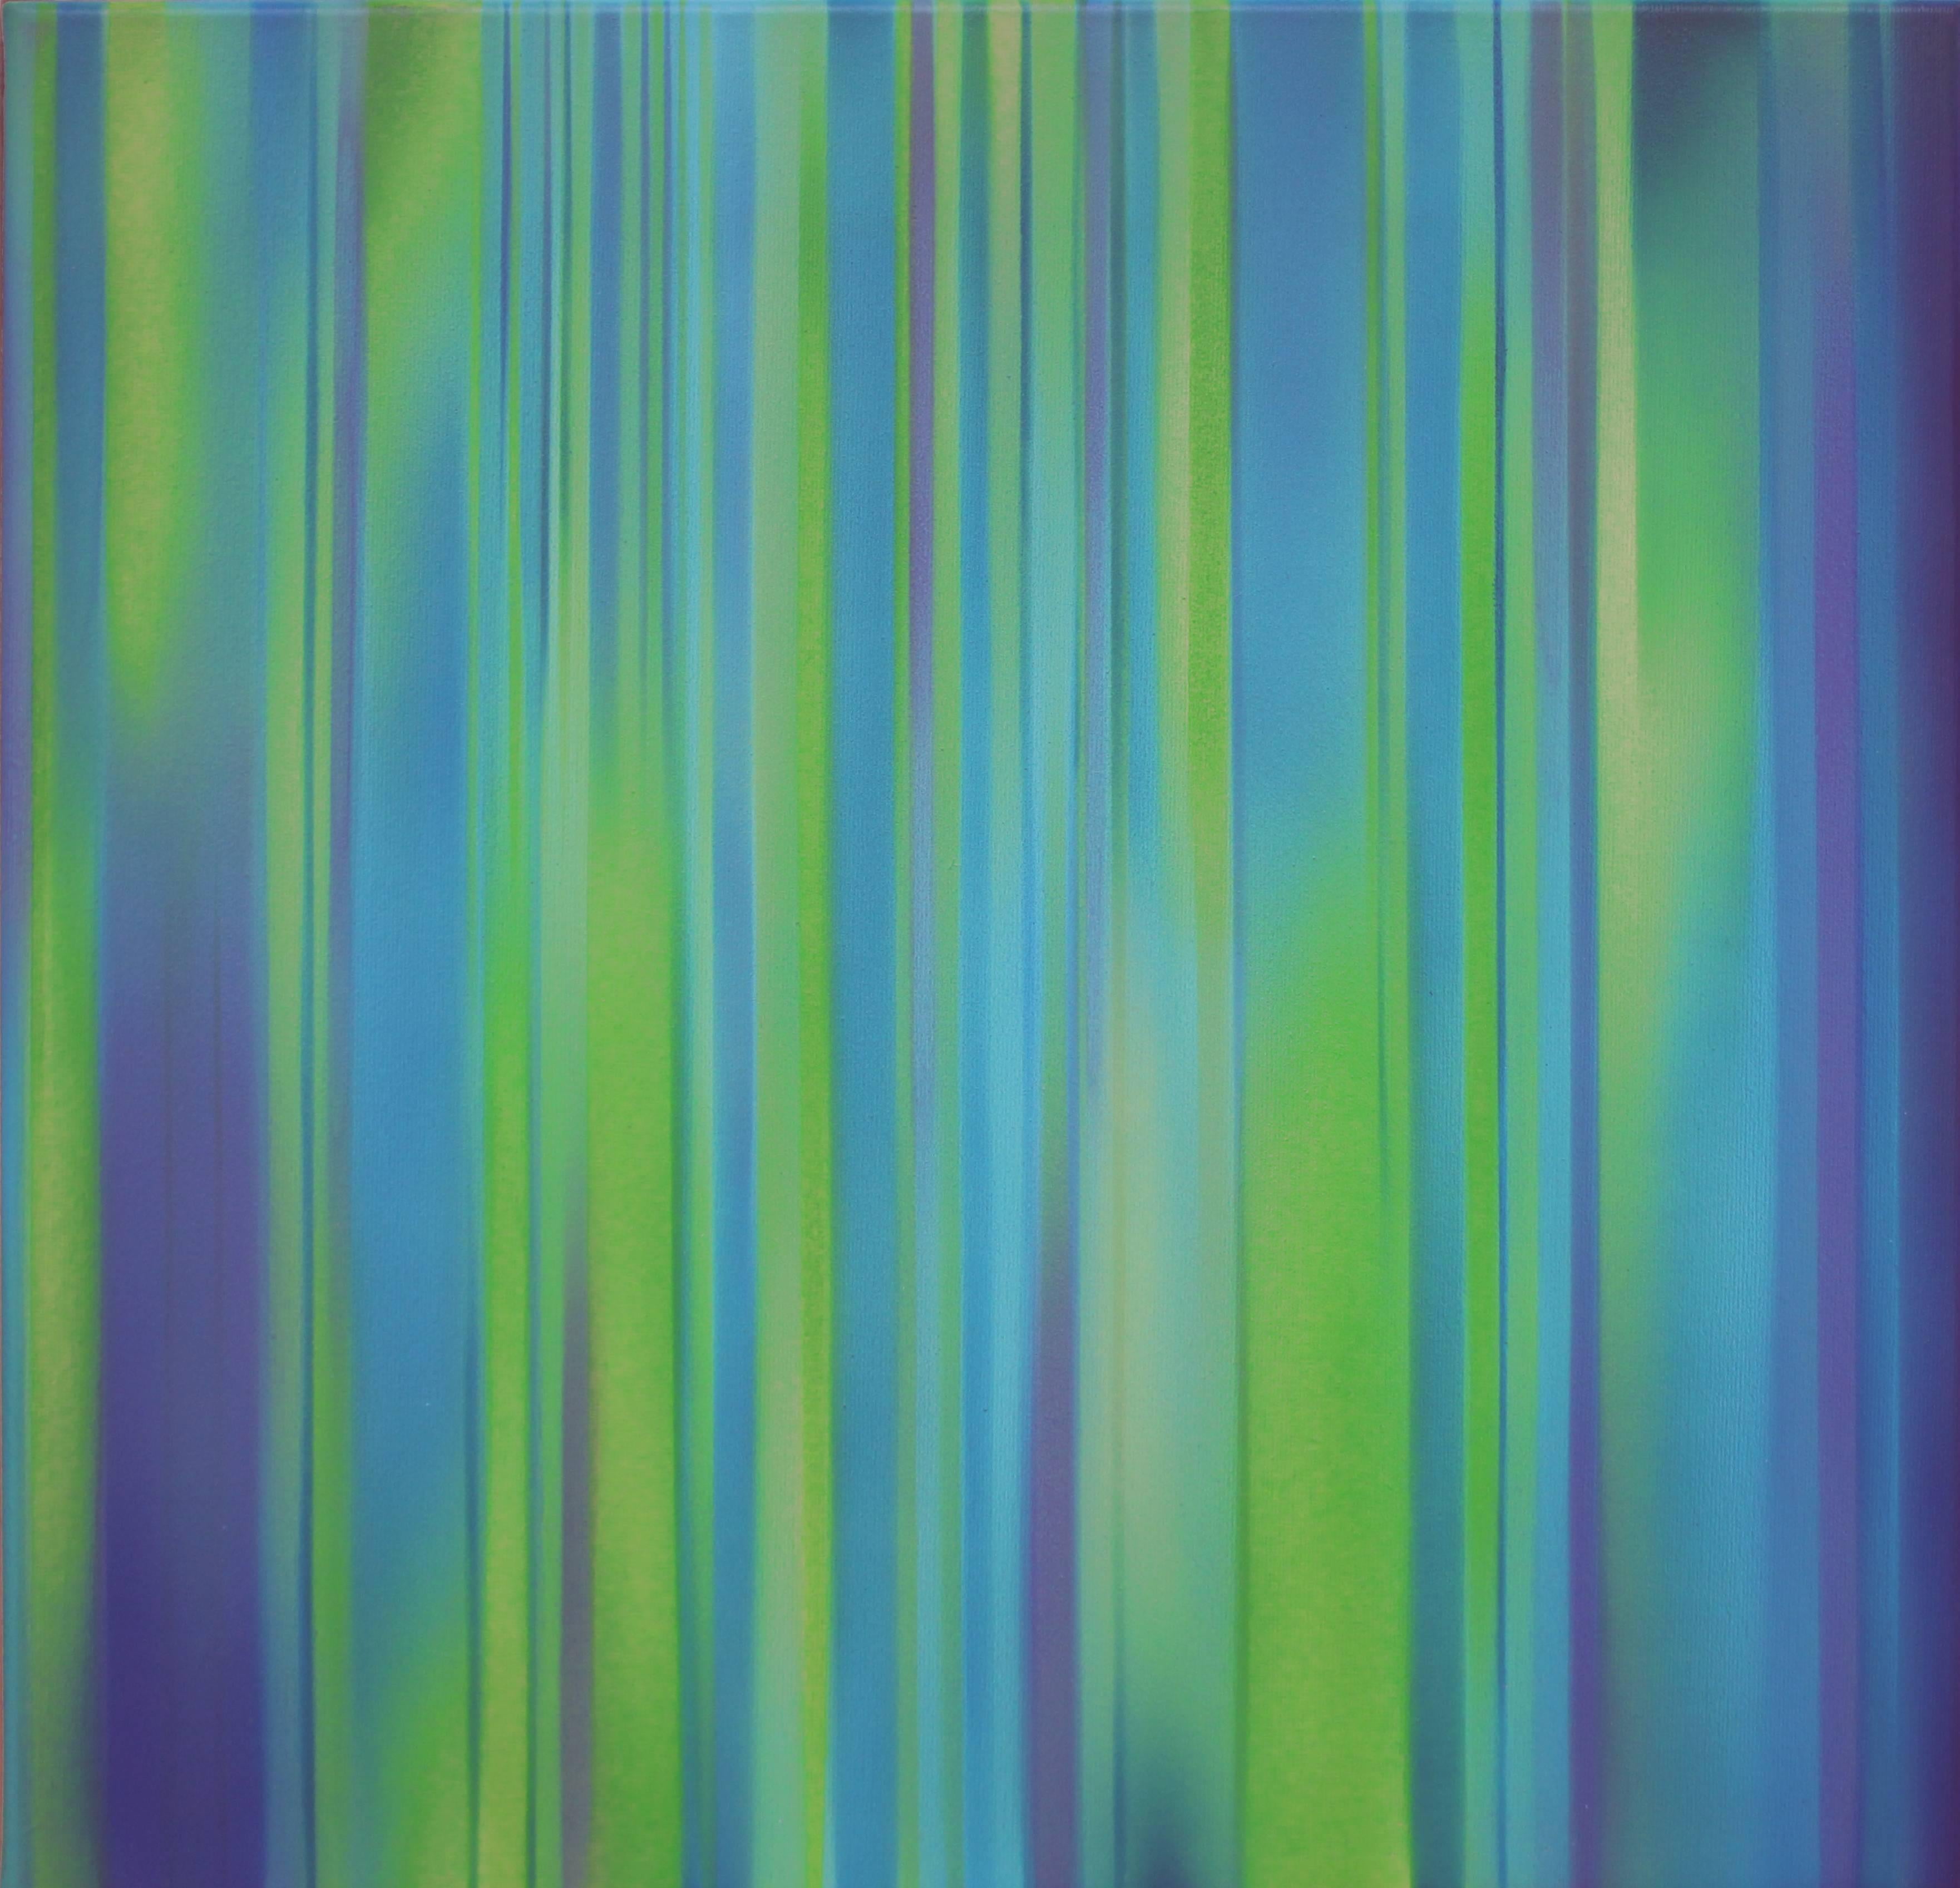 Airbrush-Acryl auf Leinwand, 2018. Signiert und datiert auf der Rückseite. Hängefertig. Es kommt direkt aus dem Atelier des Künstlers. 
Höhe: 19.69 in (50 cm), Breite: 19.88 in (50,5 cm), Tiefe: 0.79 in (2 cm)

Claudia Fauth wurde 1962 in Berlin